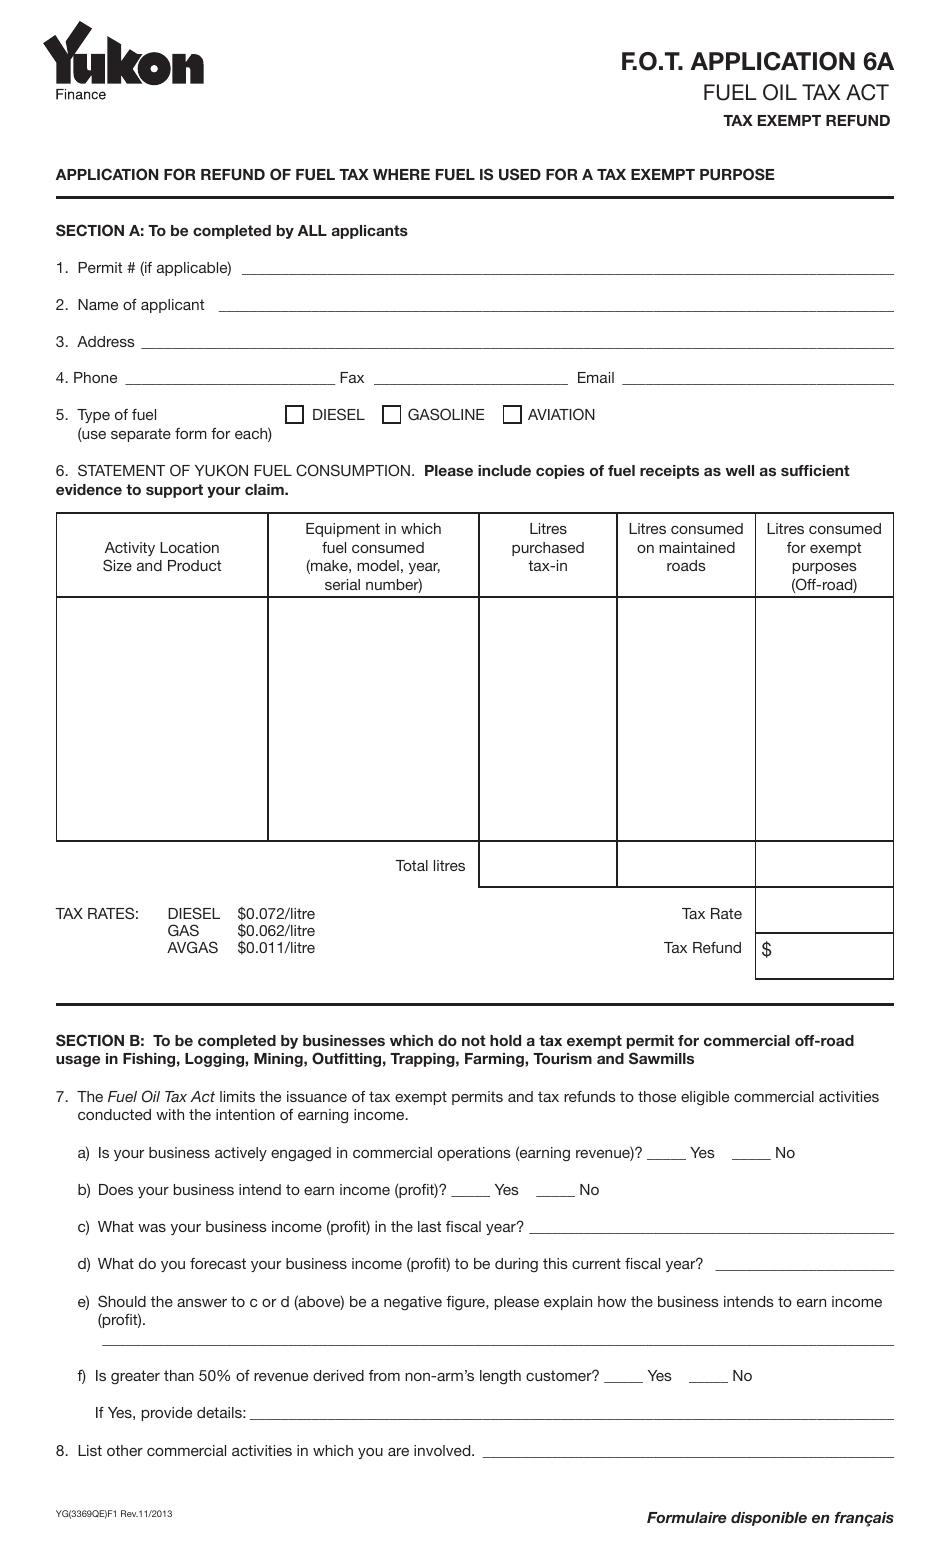 Form YG3369 Fuel Oil Tax - Application 6a - Yukon, Canada, Page 1